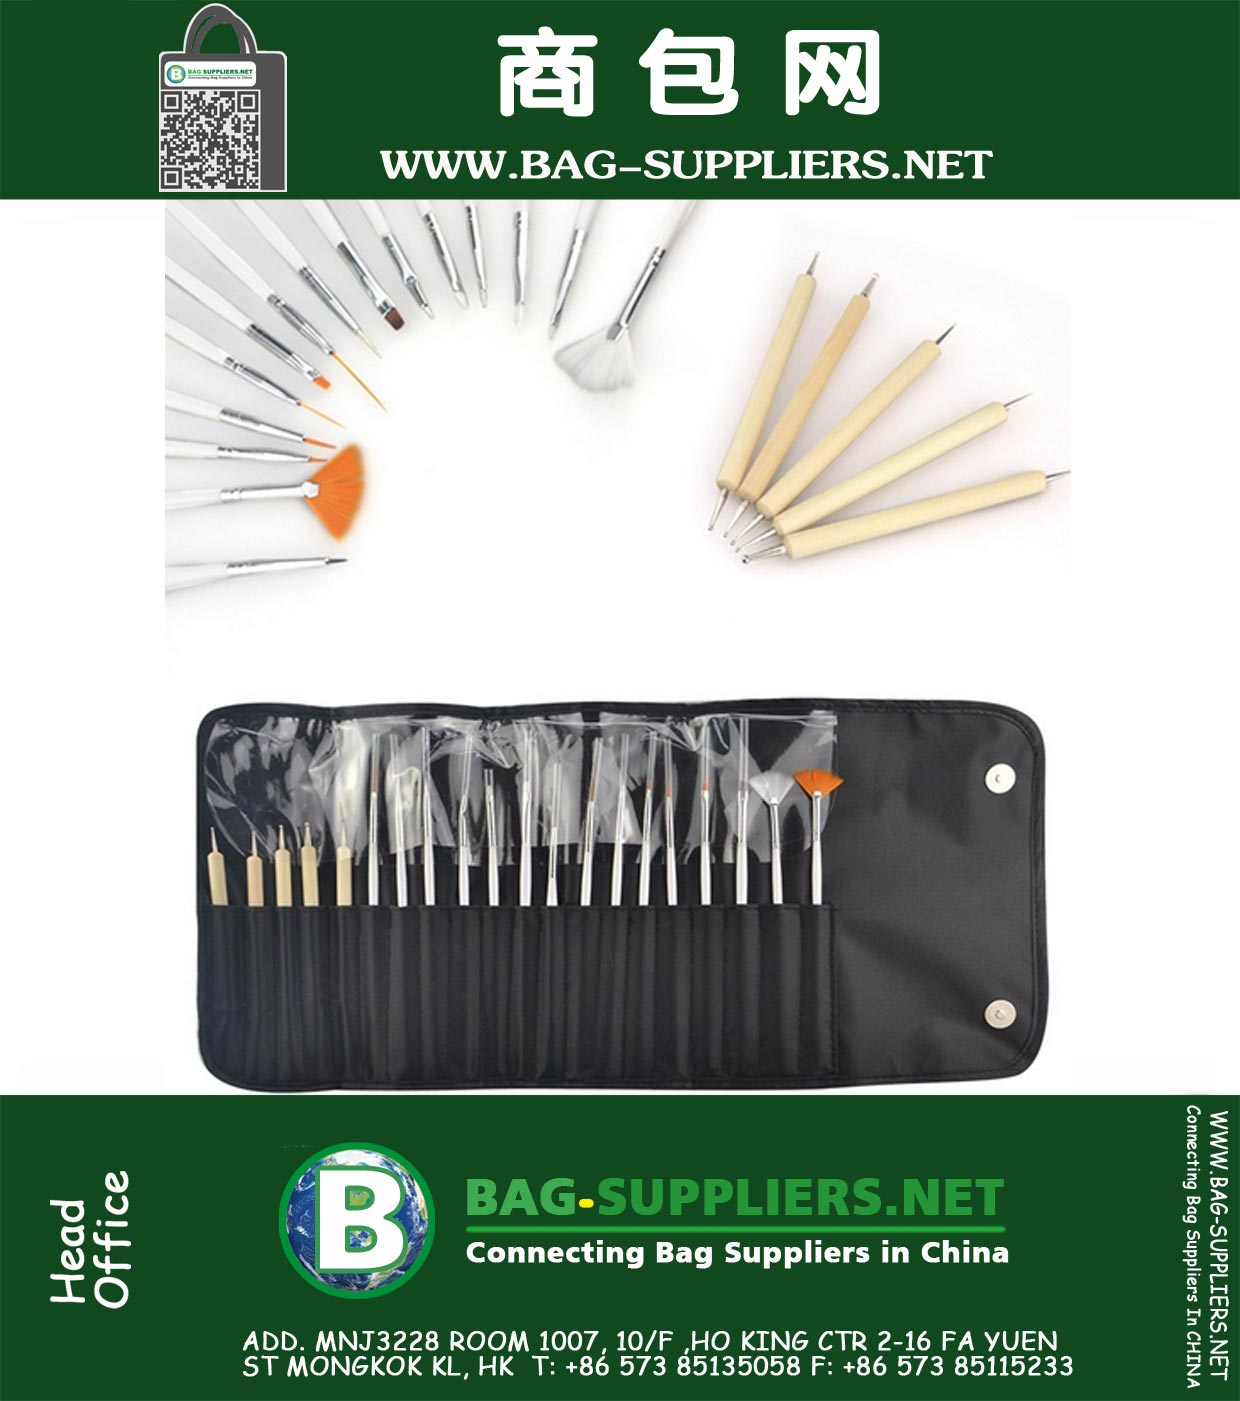 Outils de manucure Nail Art 15pcs Kit Brosses et 5pcs Nail Art Dotting Pen bricolage Nail Art Tool dans des sacs noirs